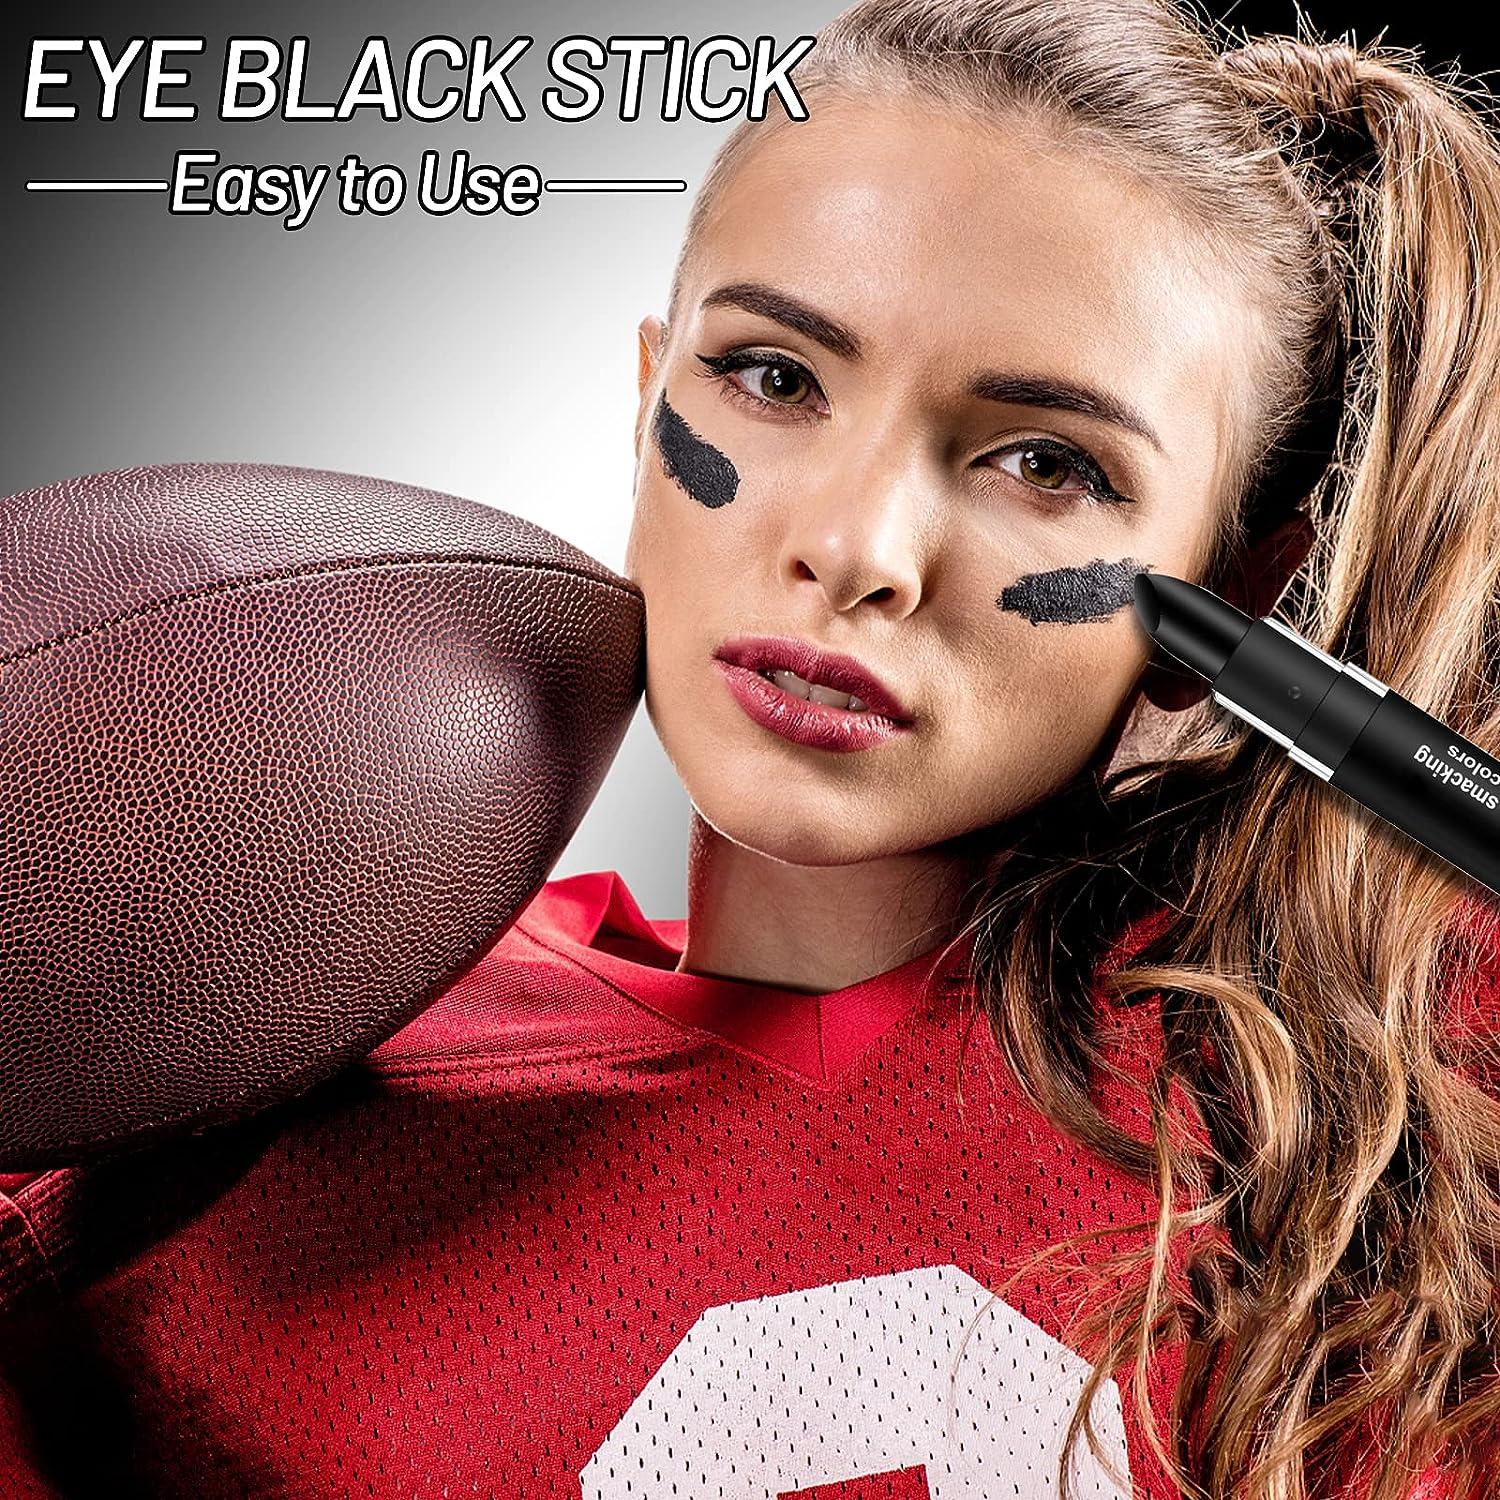  3PCS Eye Black Stick for Sports, Eye Black Face Body